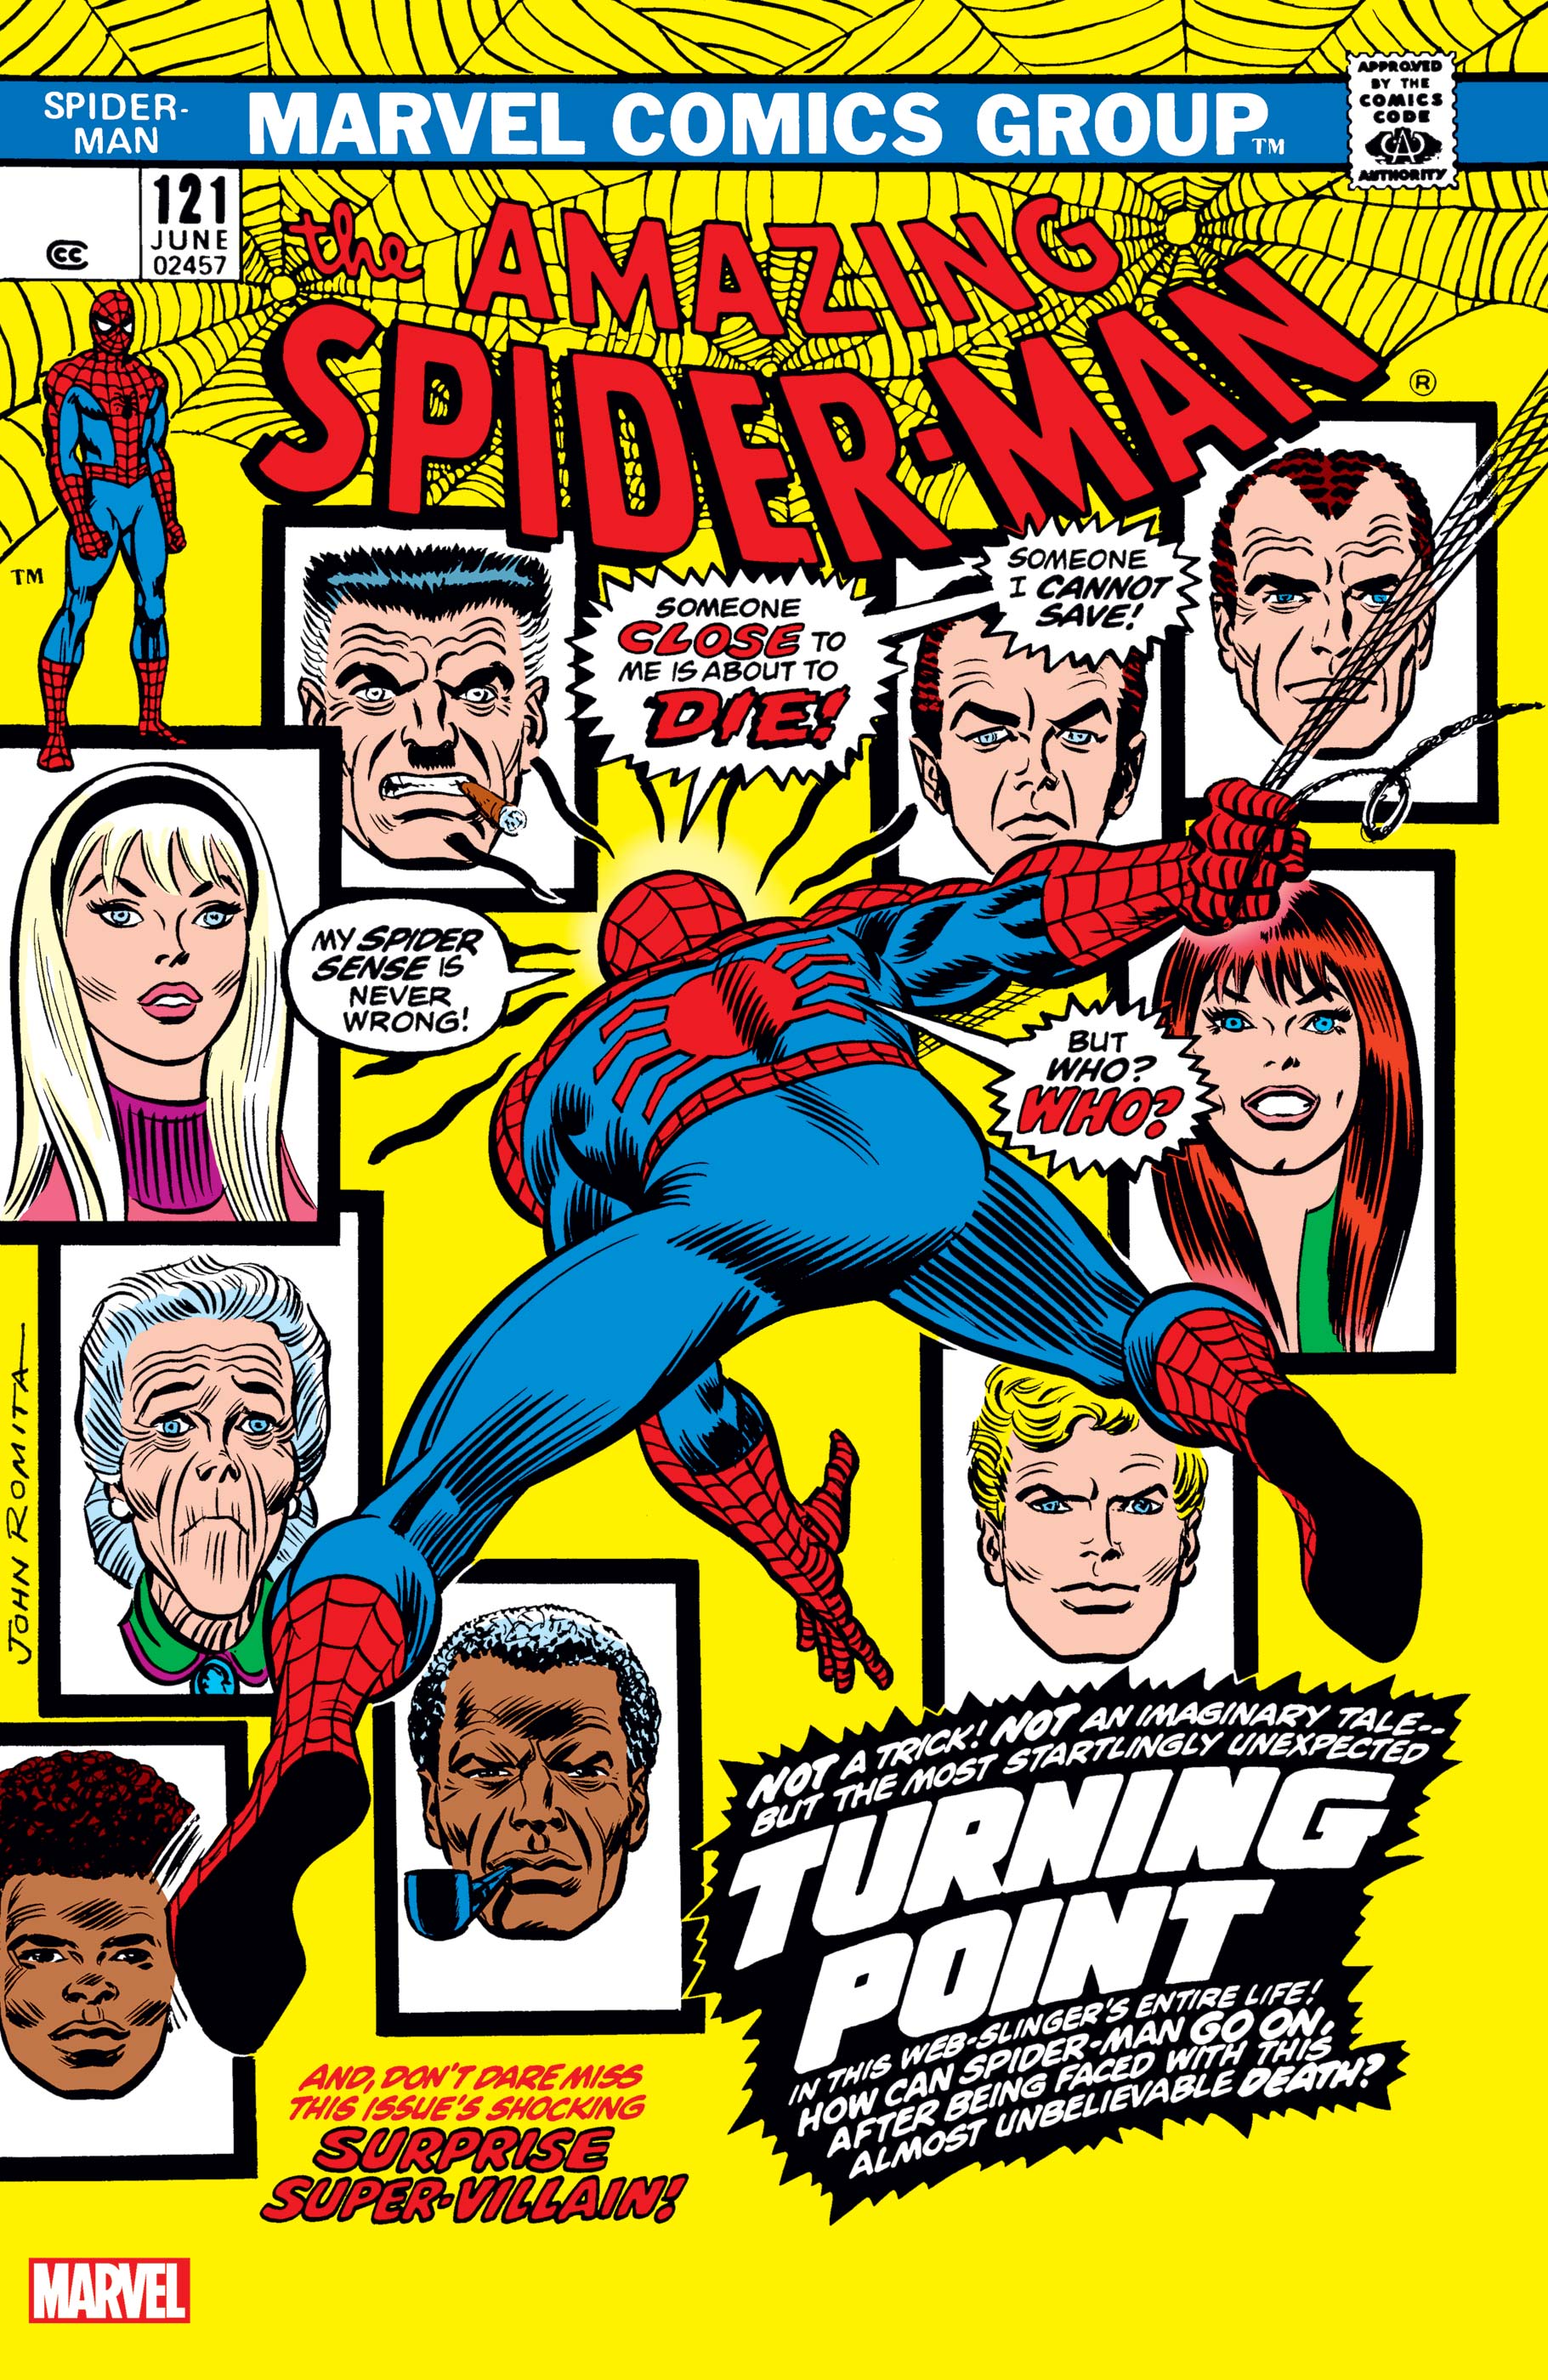 Amazing spider-man 121